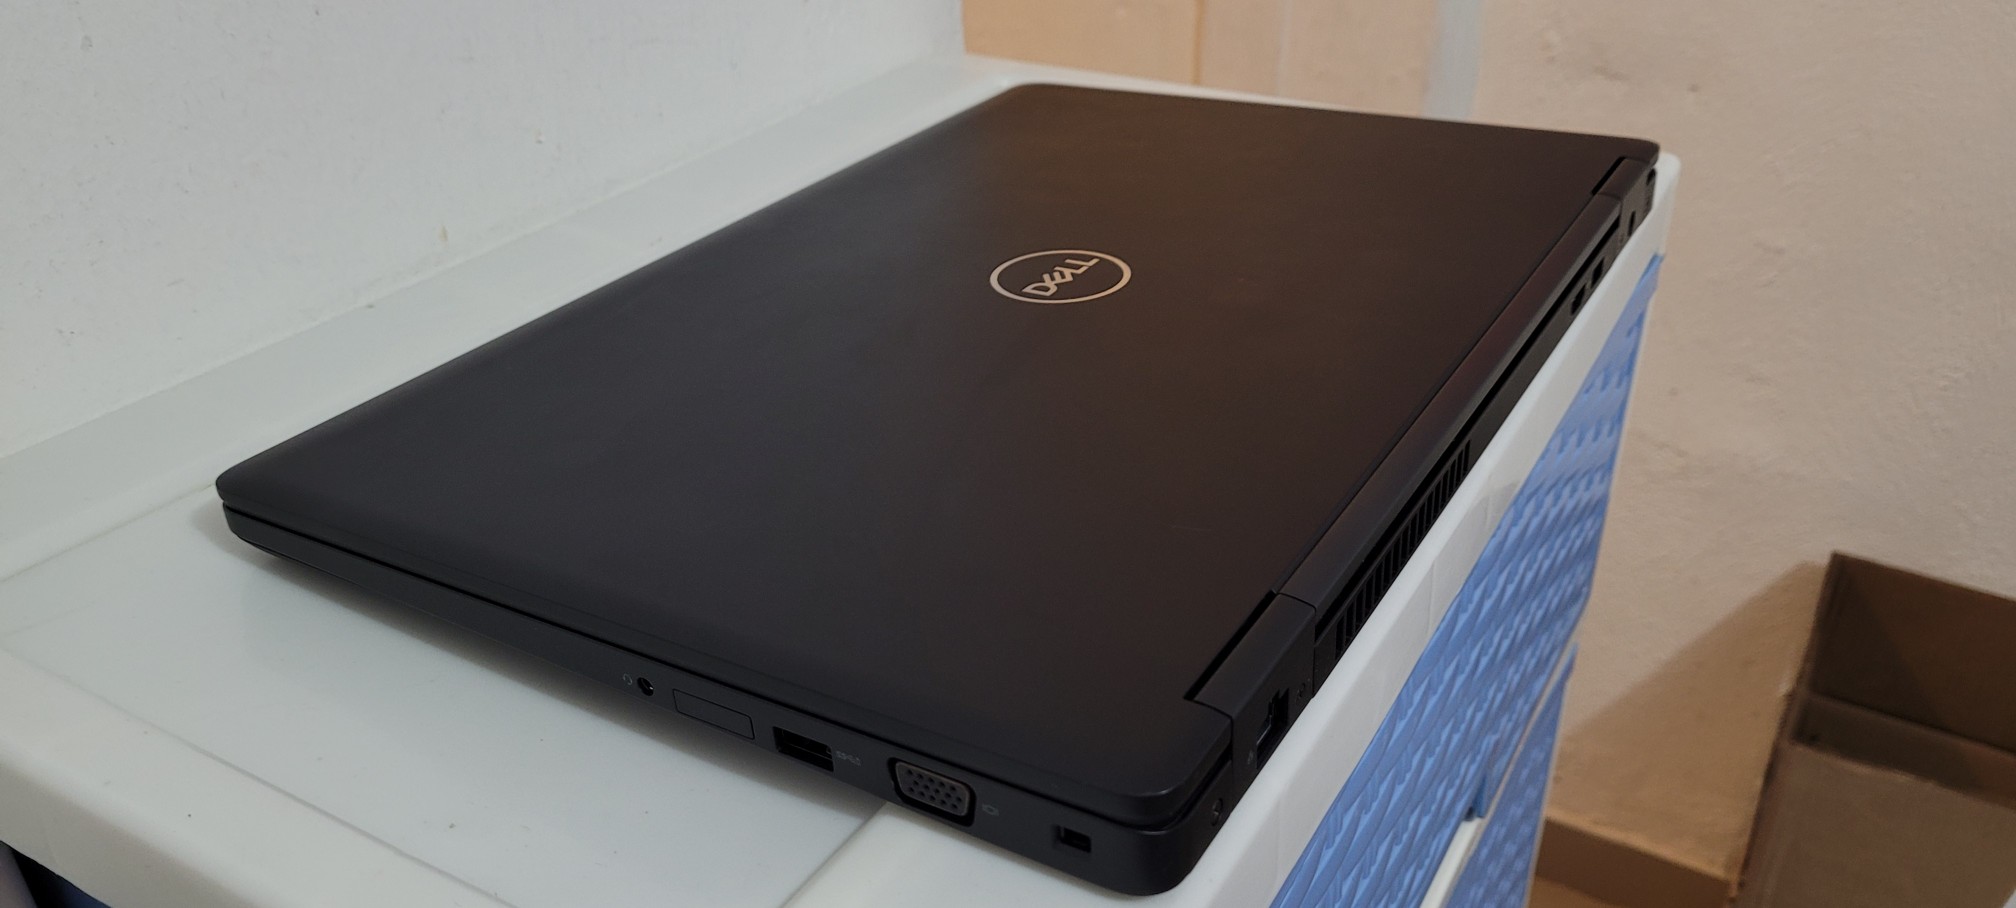 computadoras y laptops - Dell 5570 17 Pulg Core i7 Ram 16gb ddr4 Video intel Y Aty Radeon R7 2gb Dedicada 2